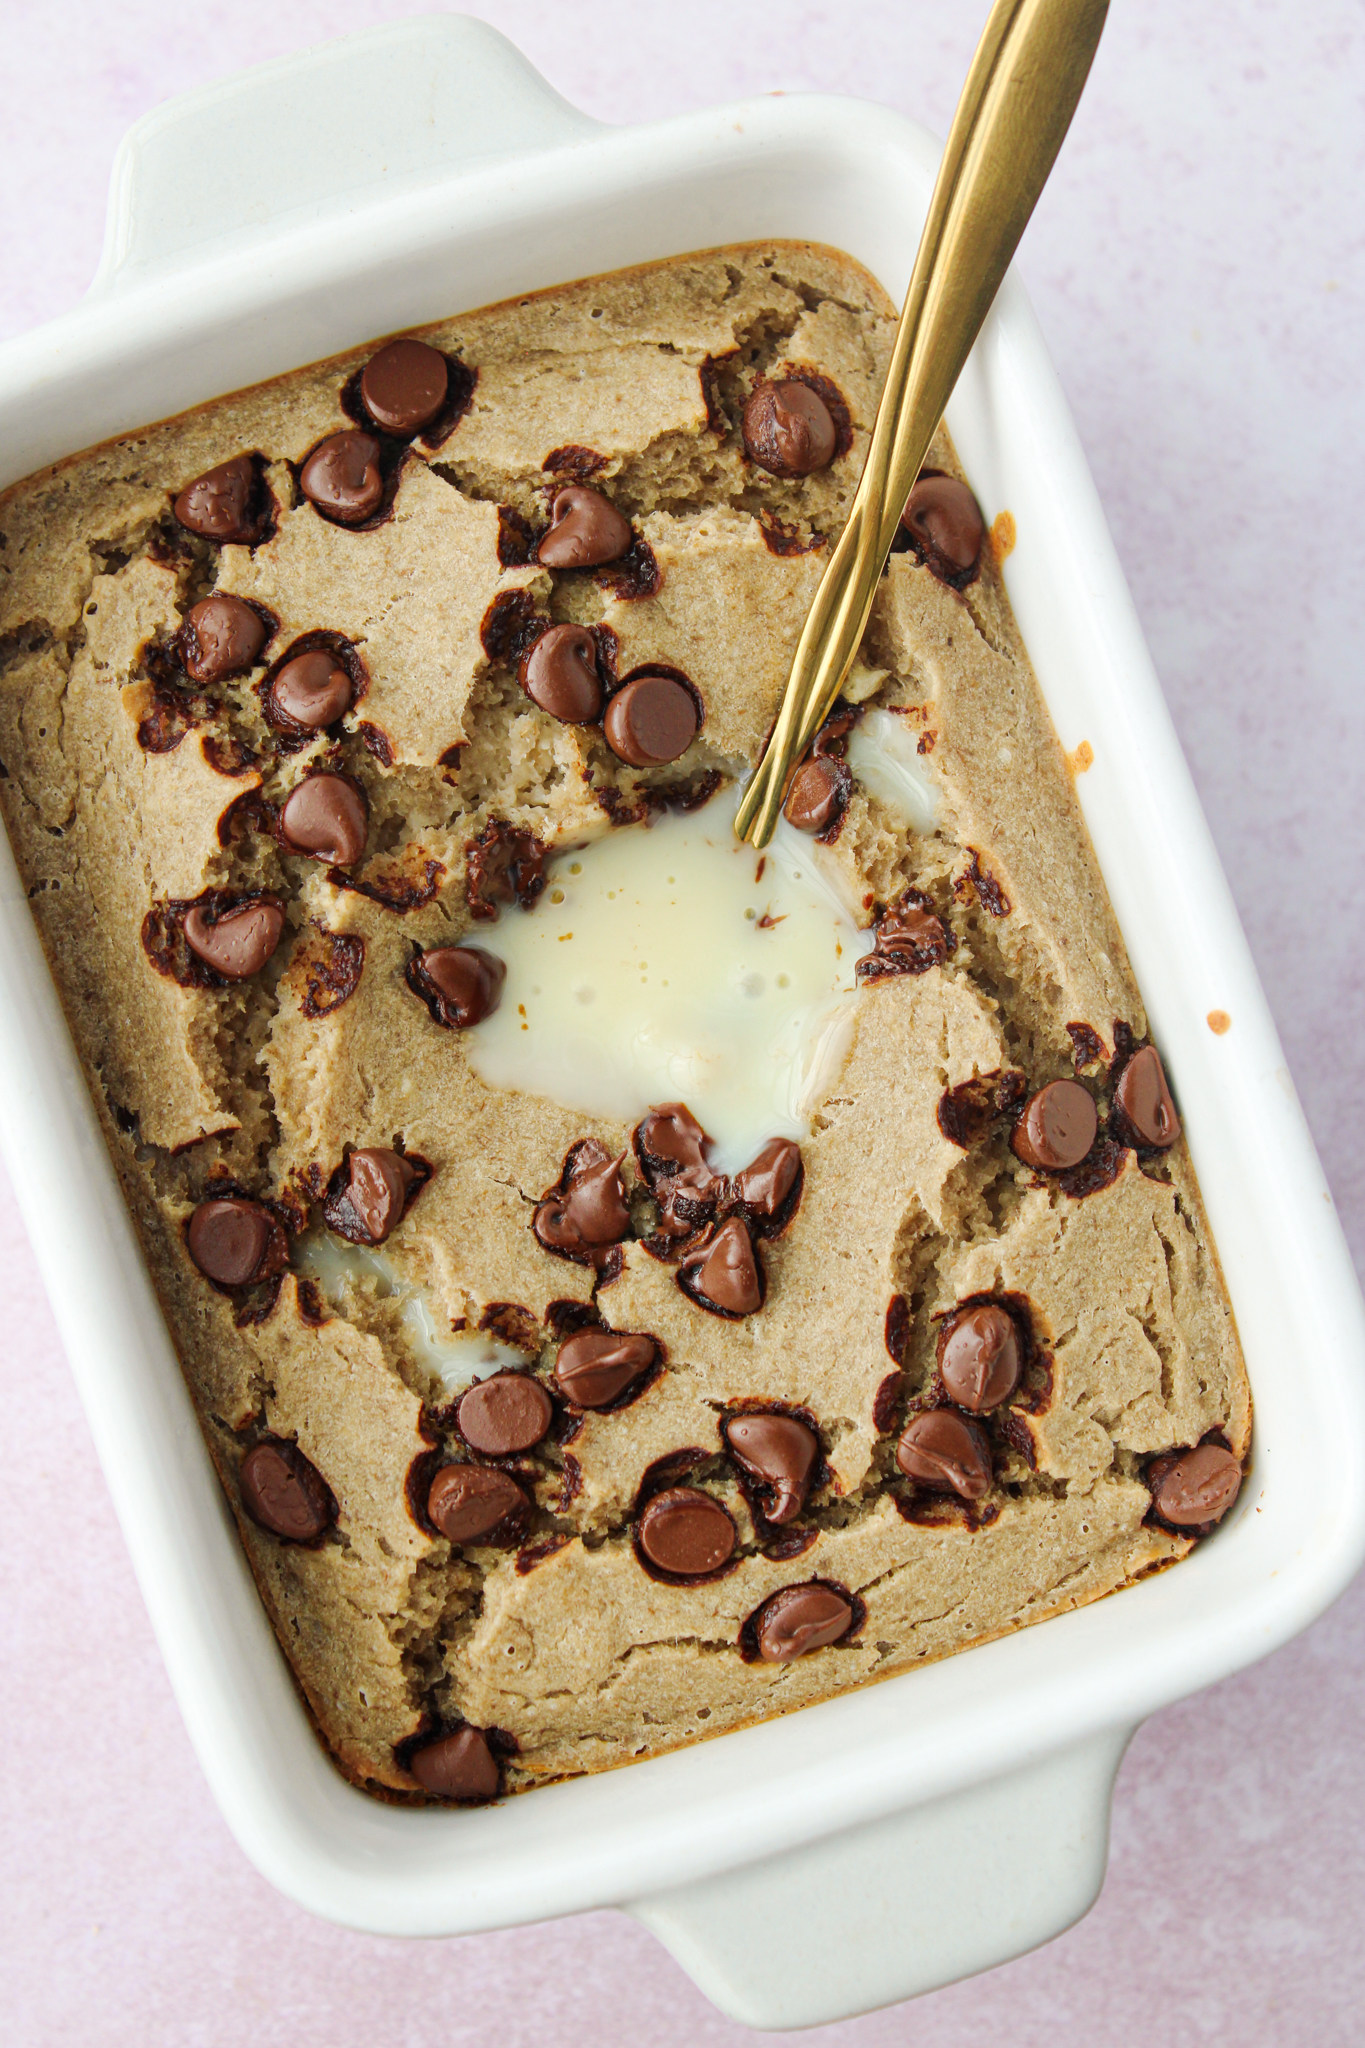 geOnde baked oats healthy chocolate chip vanille plantaardig vegan baked oats lekker makkelijk snel